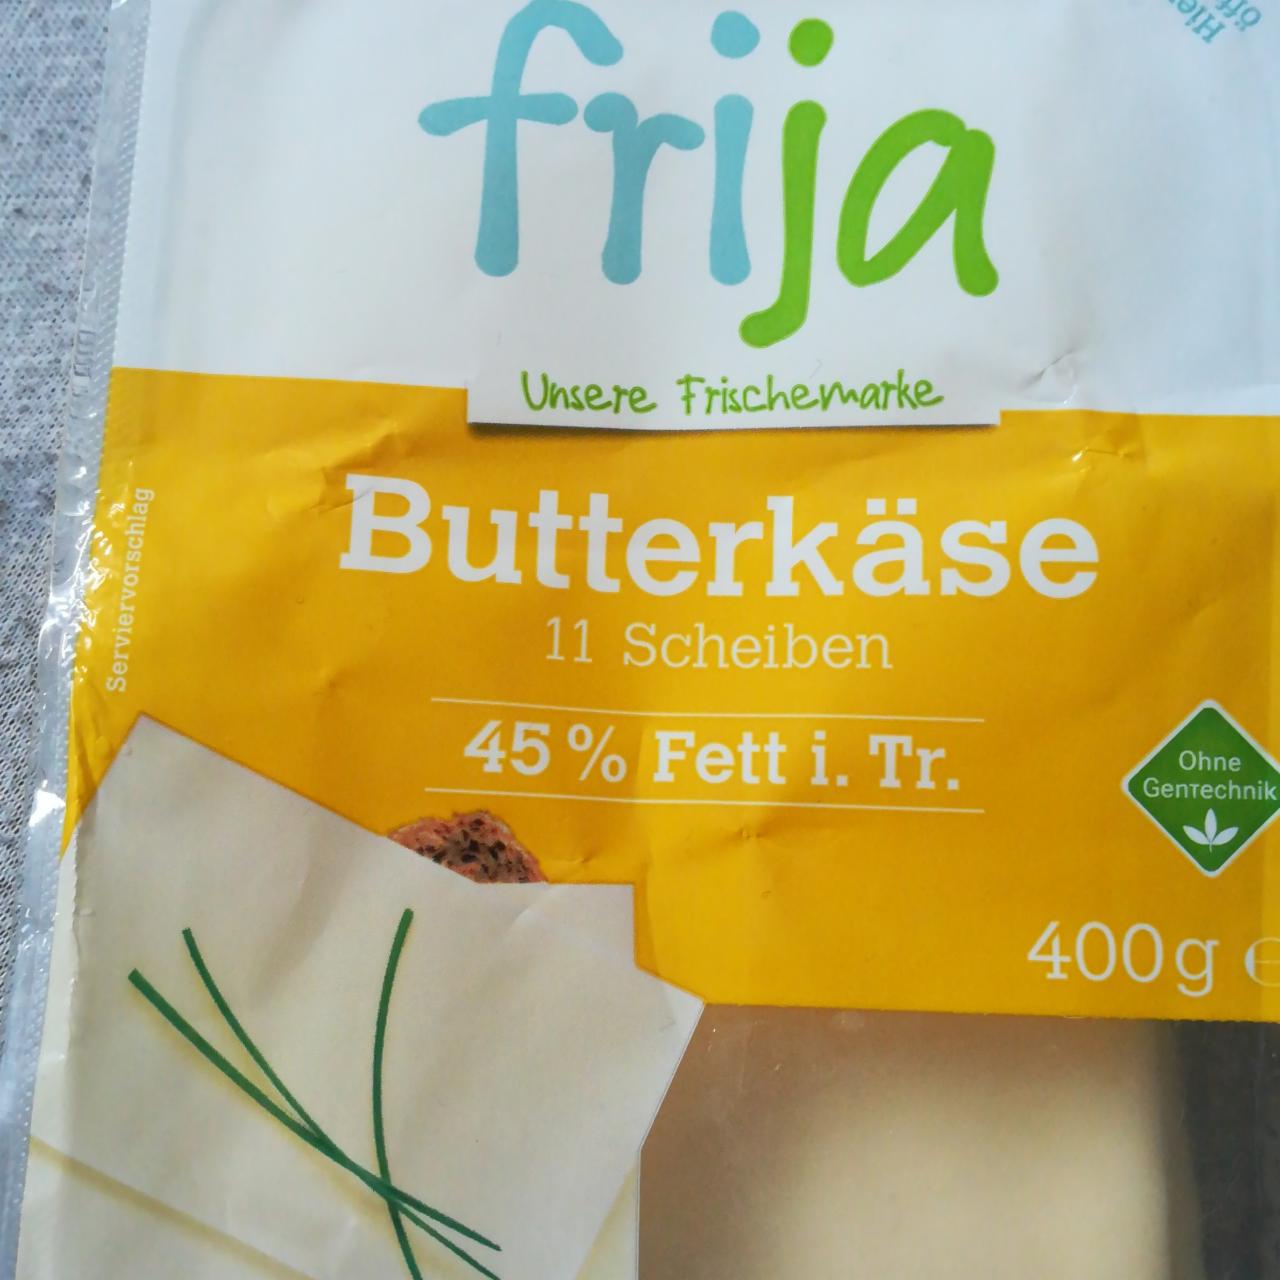 Fotografie - Butterkäse 45% Fett i. Tr. Frija